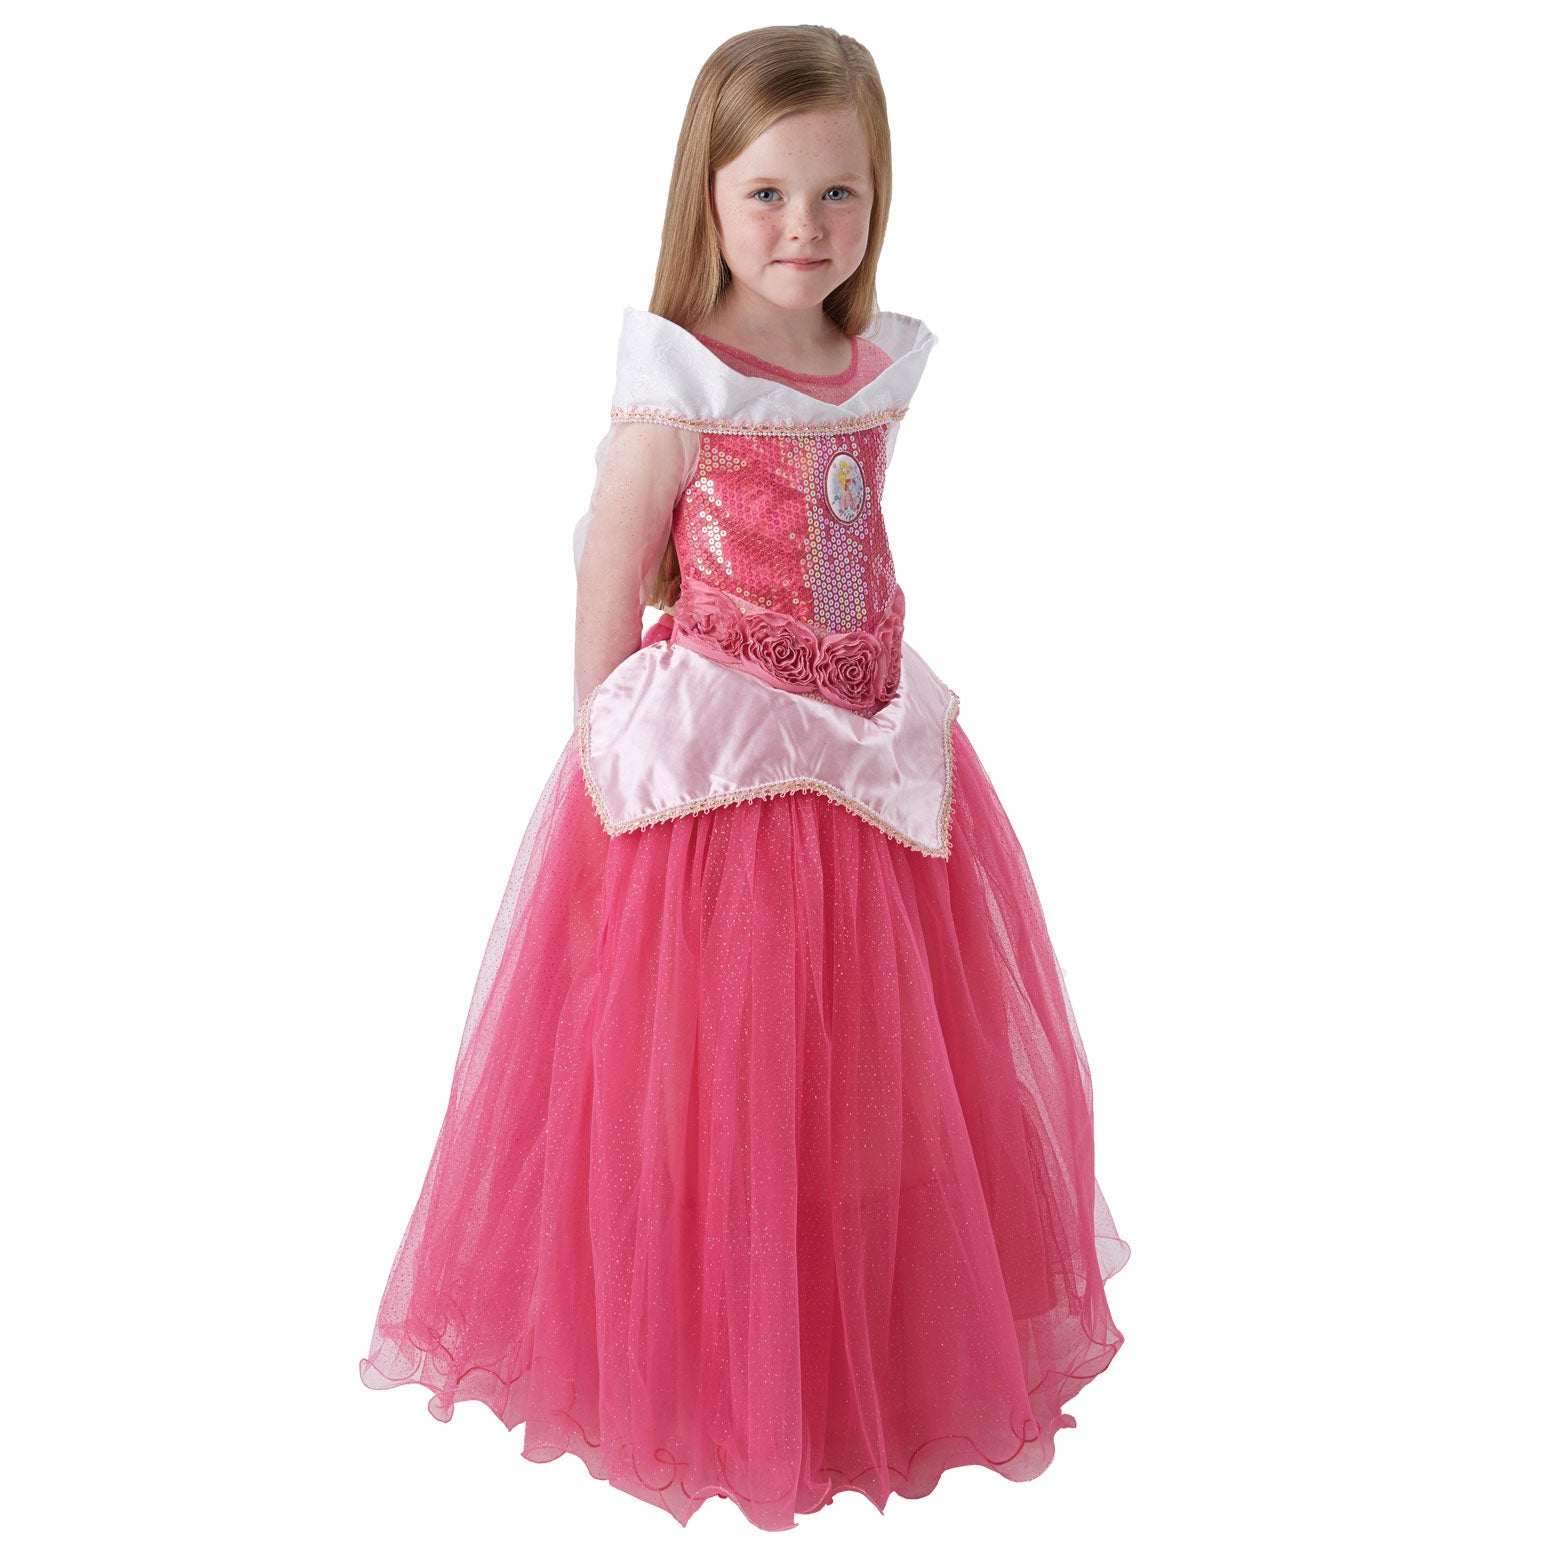 Child Premium Aurora Costume